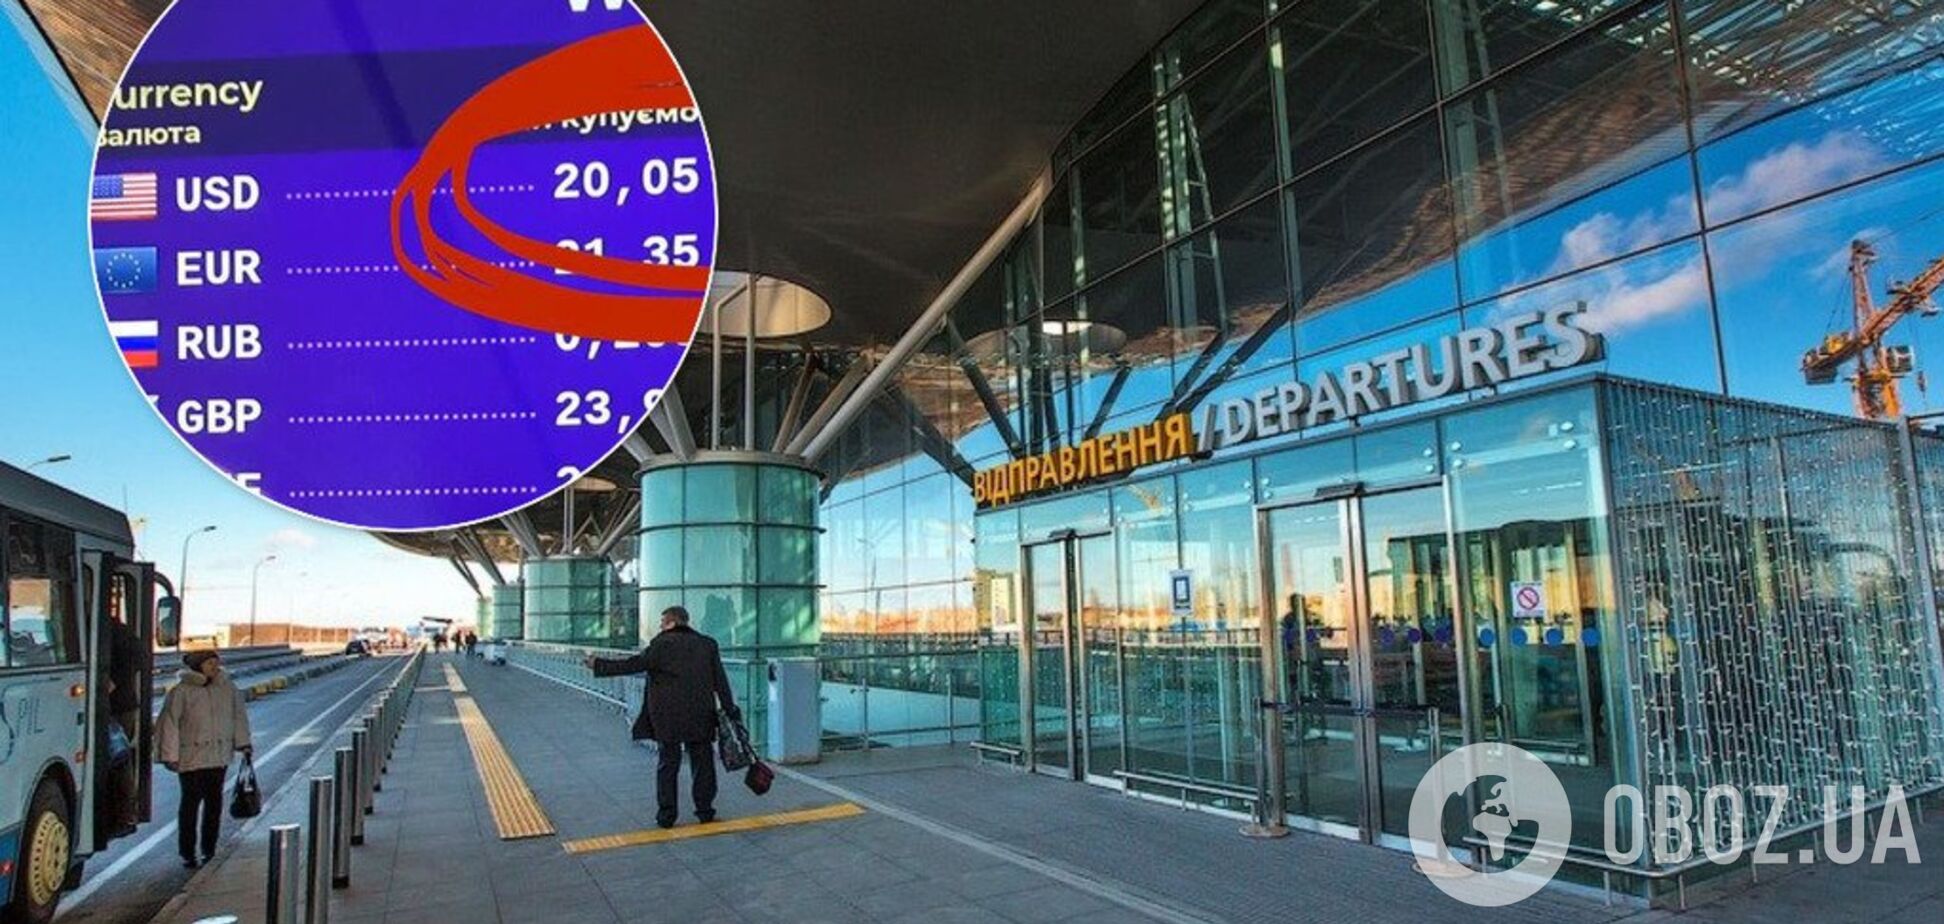 'Это вообще законно?!' Курс доллара в 'Борисполе' возмутил пассажиров